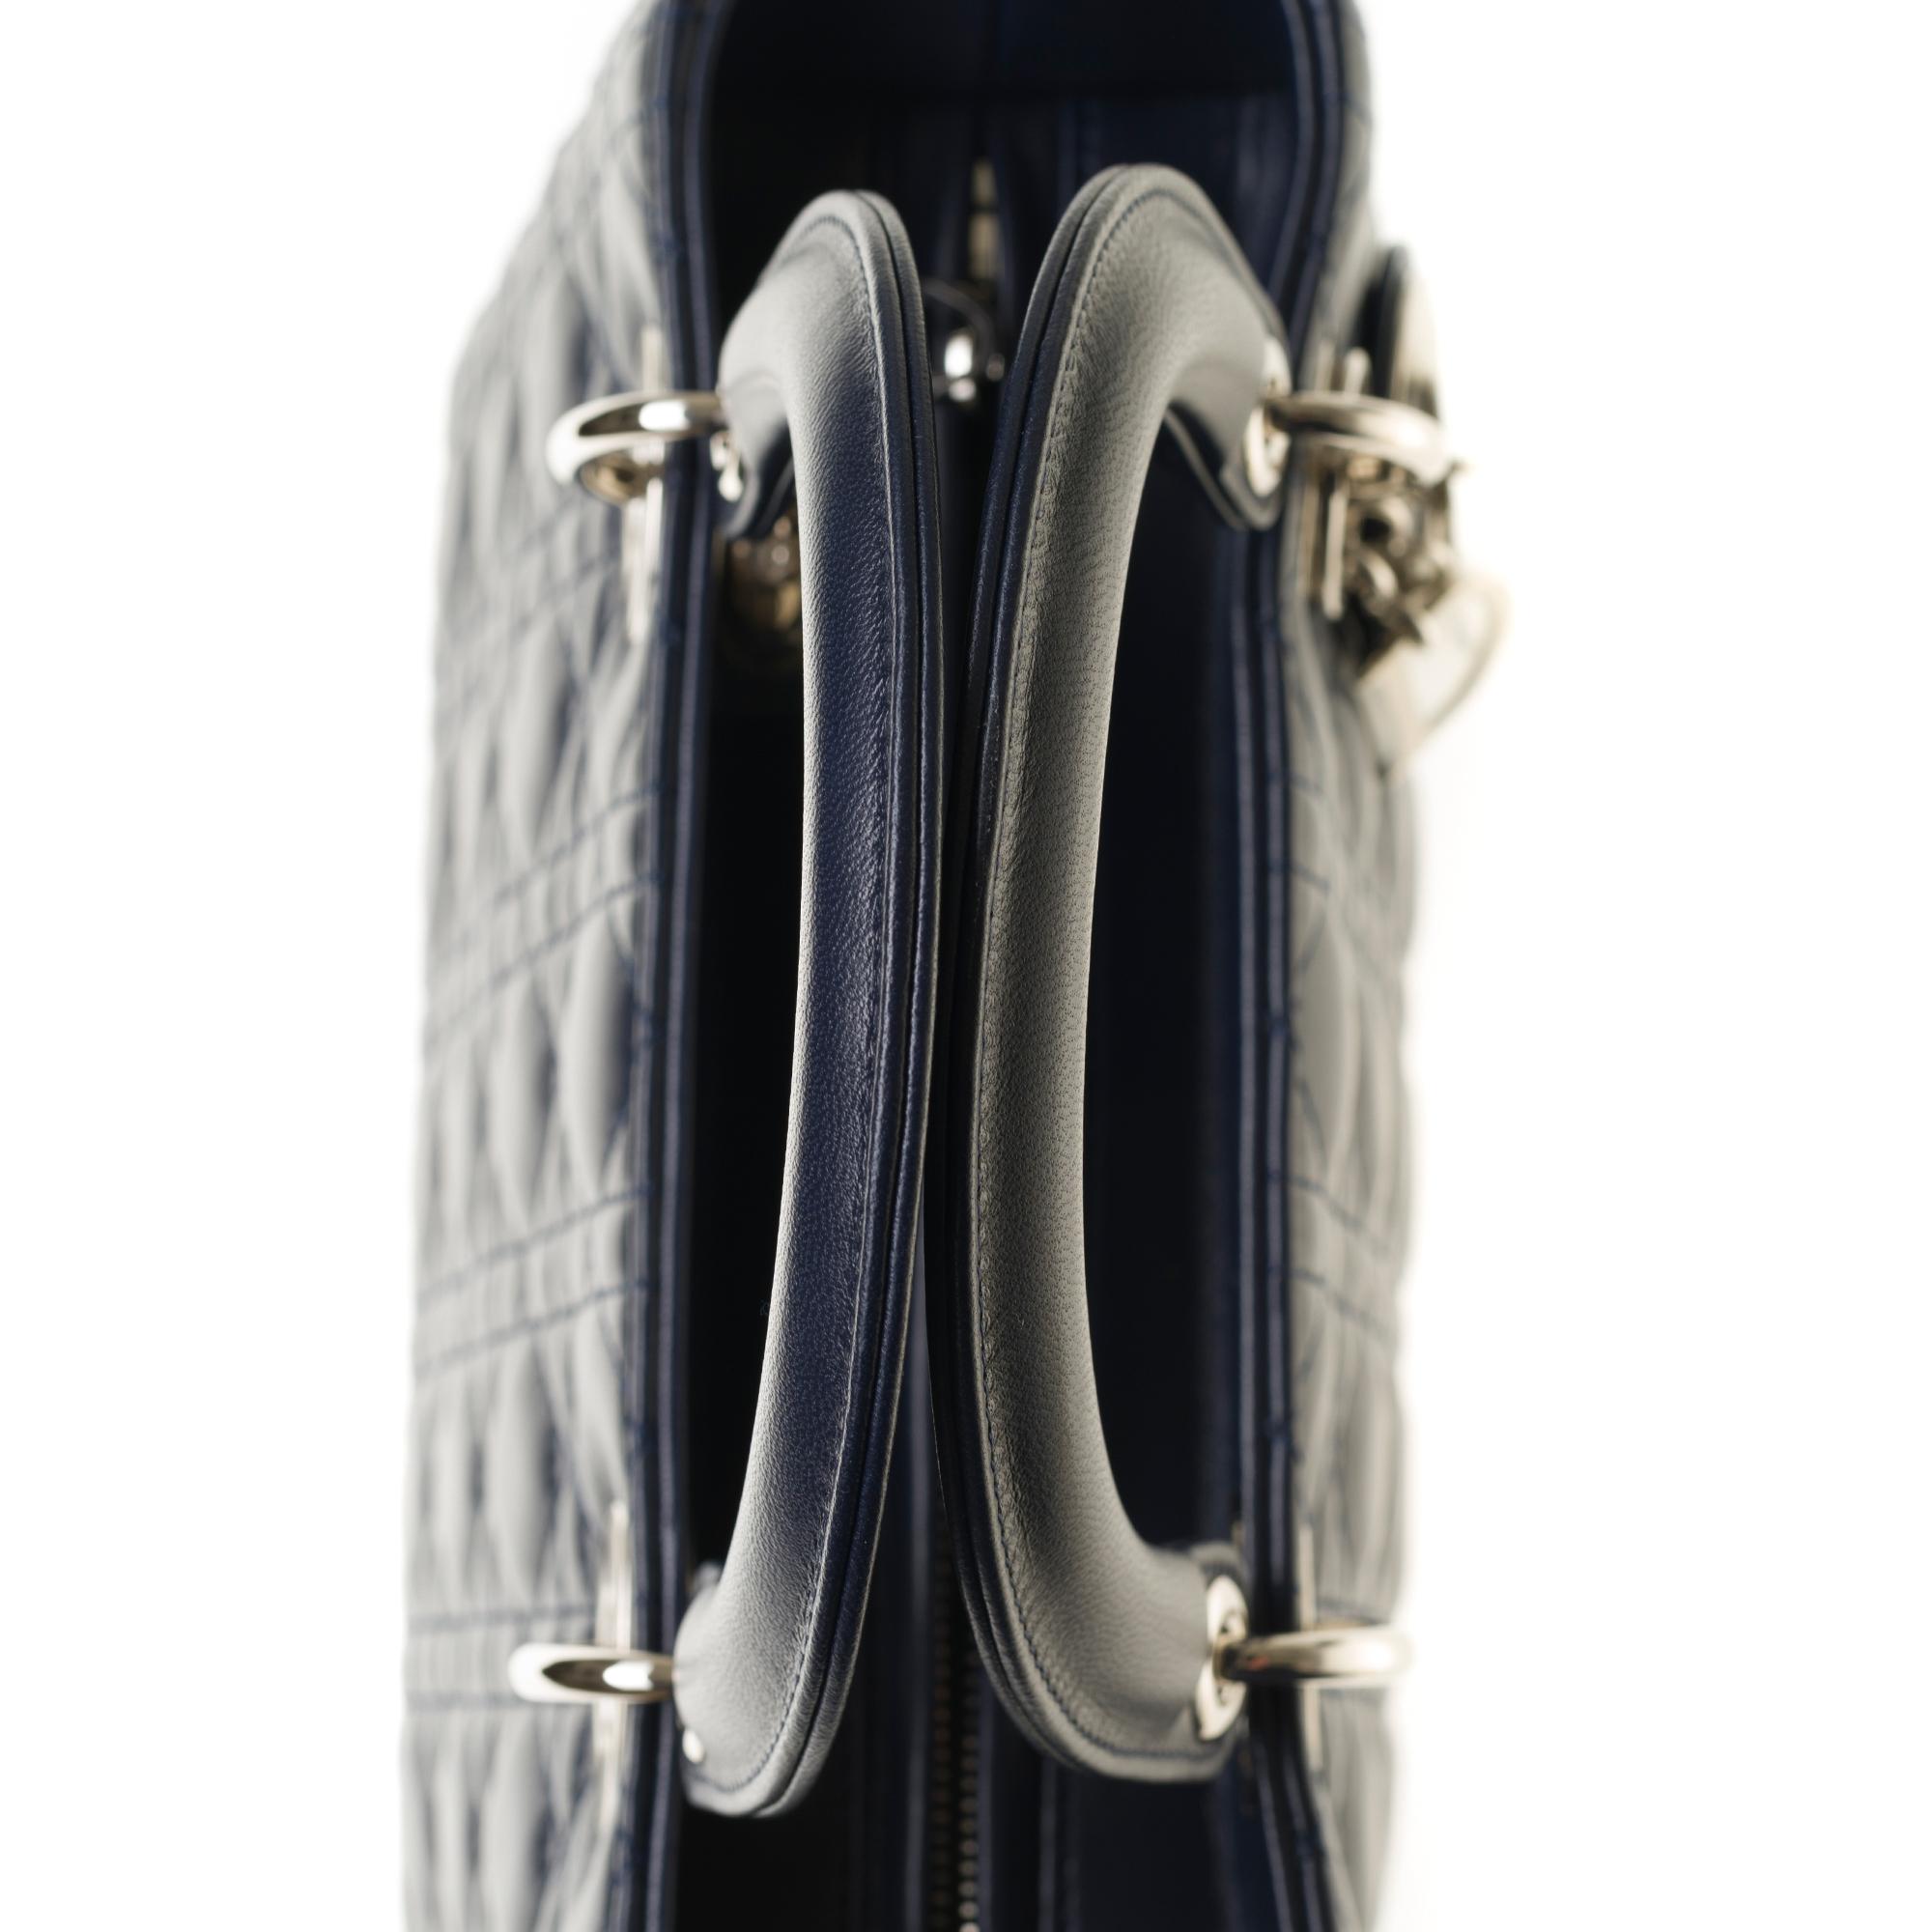  Christian Dior Lady Dior Medium size handbag in blue navy cannage leather, PHW 3